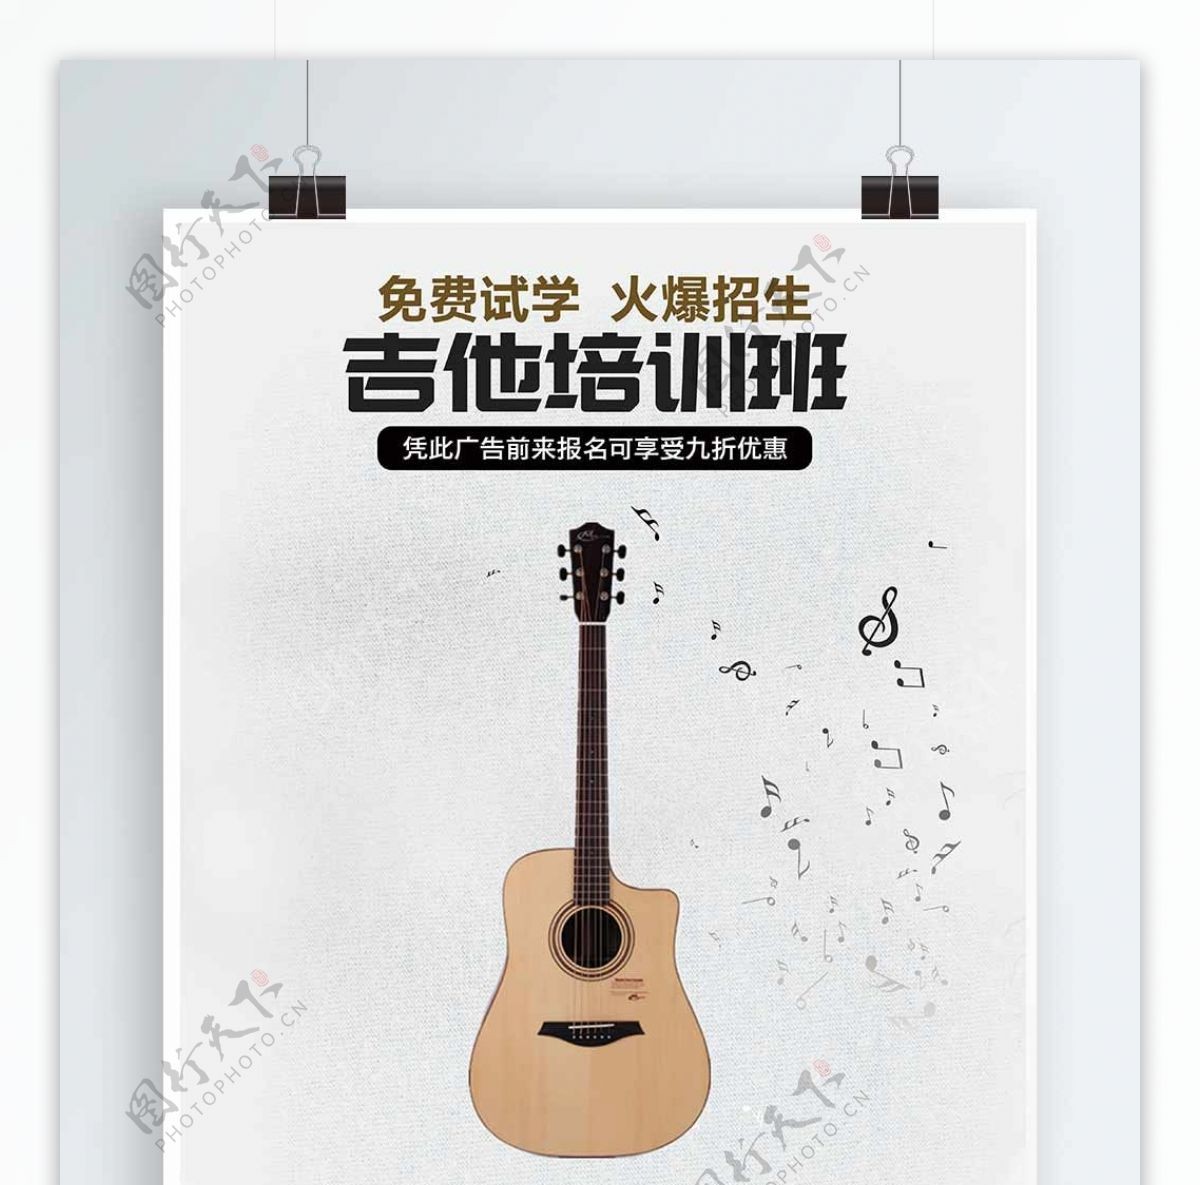 简约风吉他培训班海报宣传设计